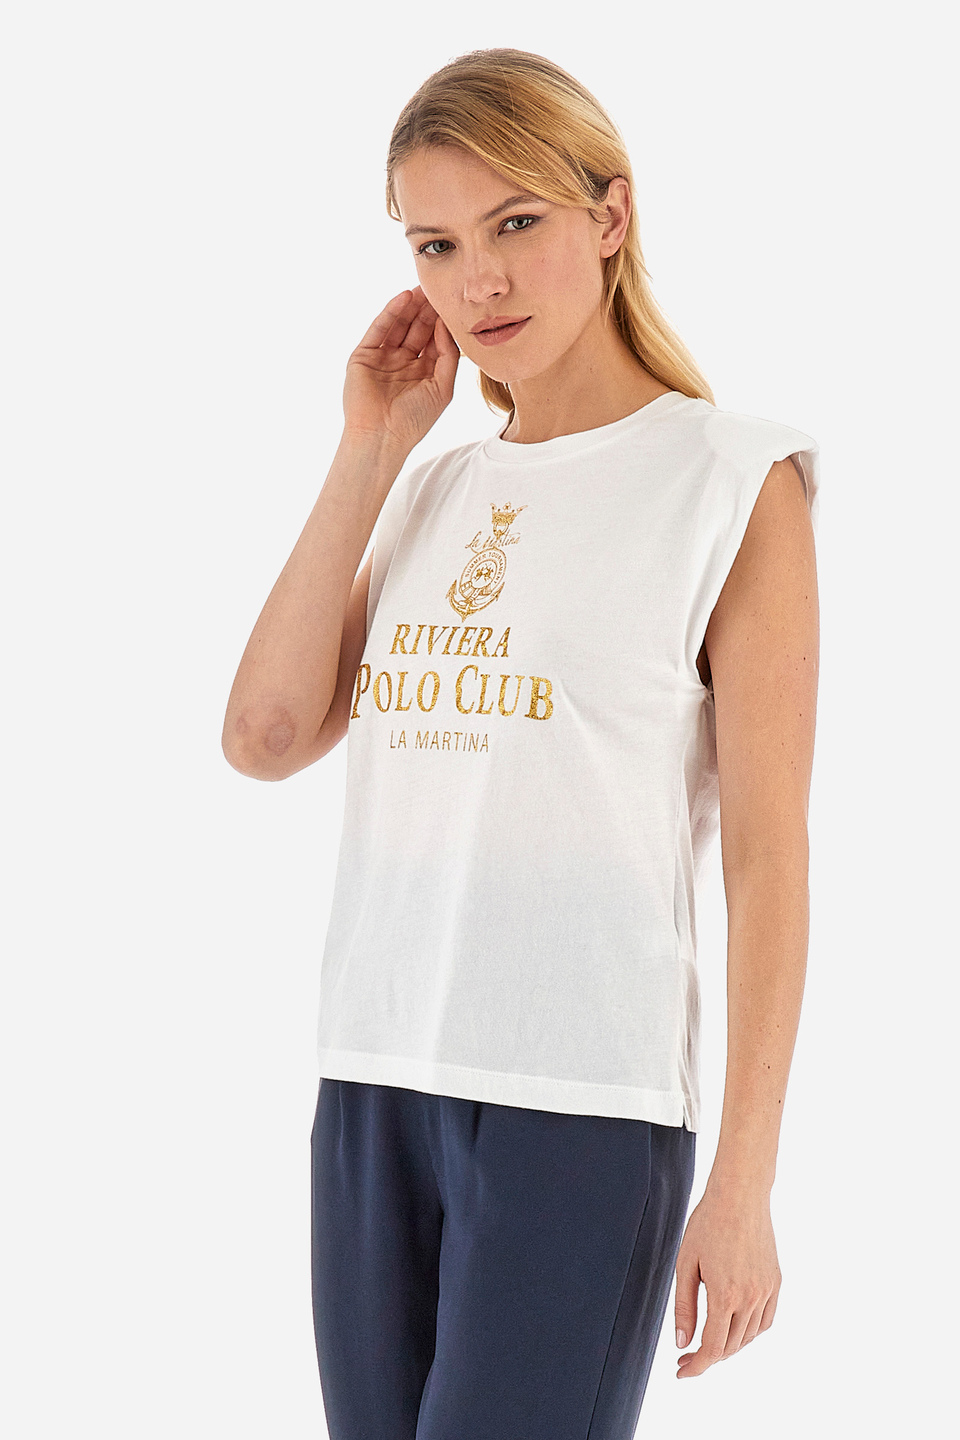 Women's sleeveless 100% cotton regular fit t-shirt - Vedonia | La Martina - Official Online Shop